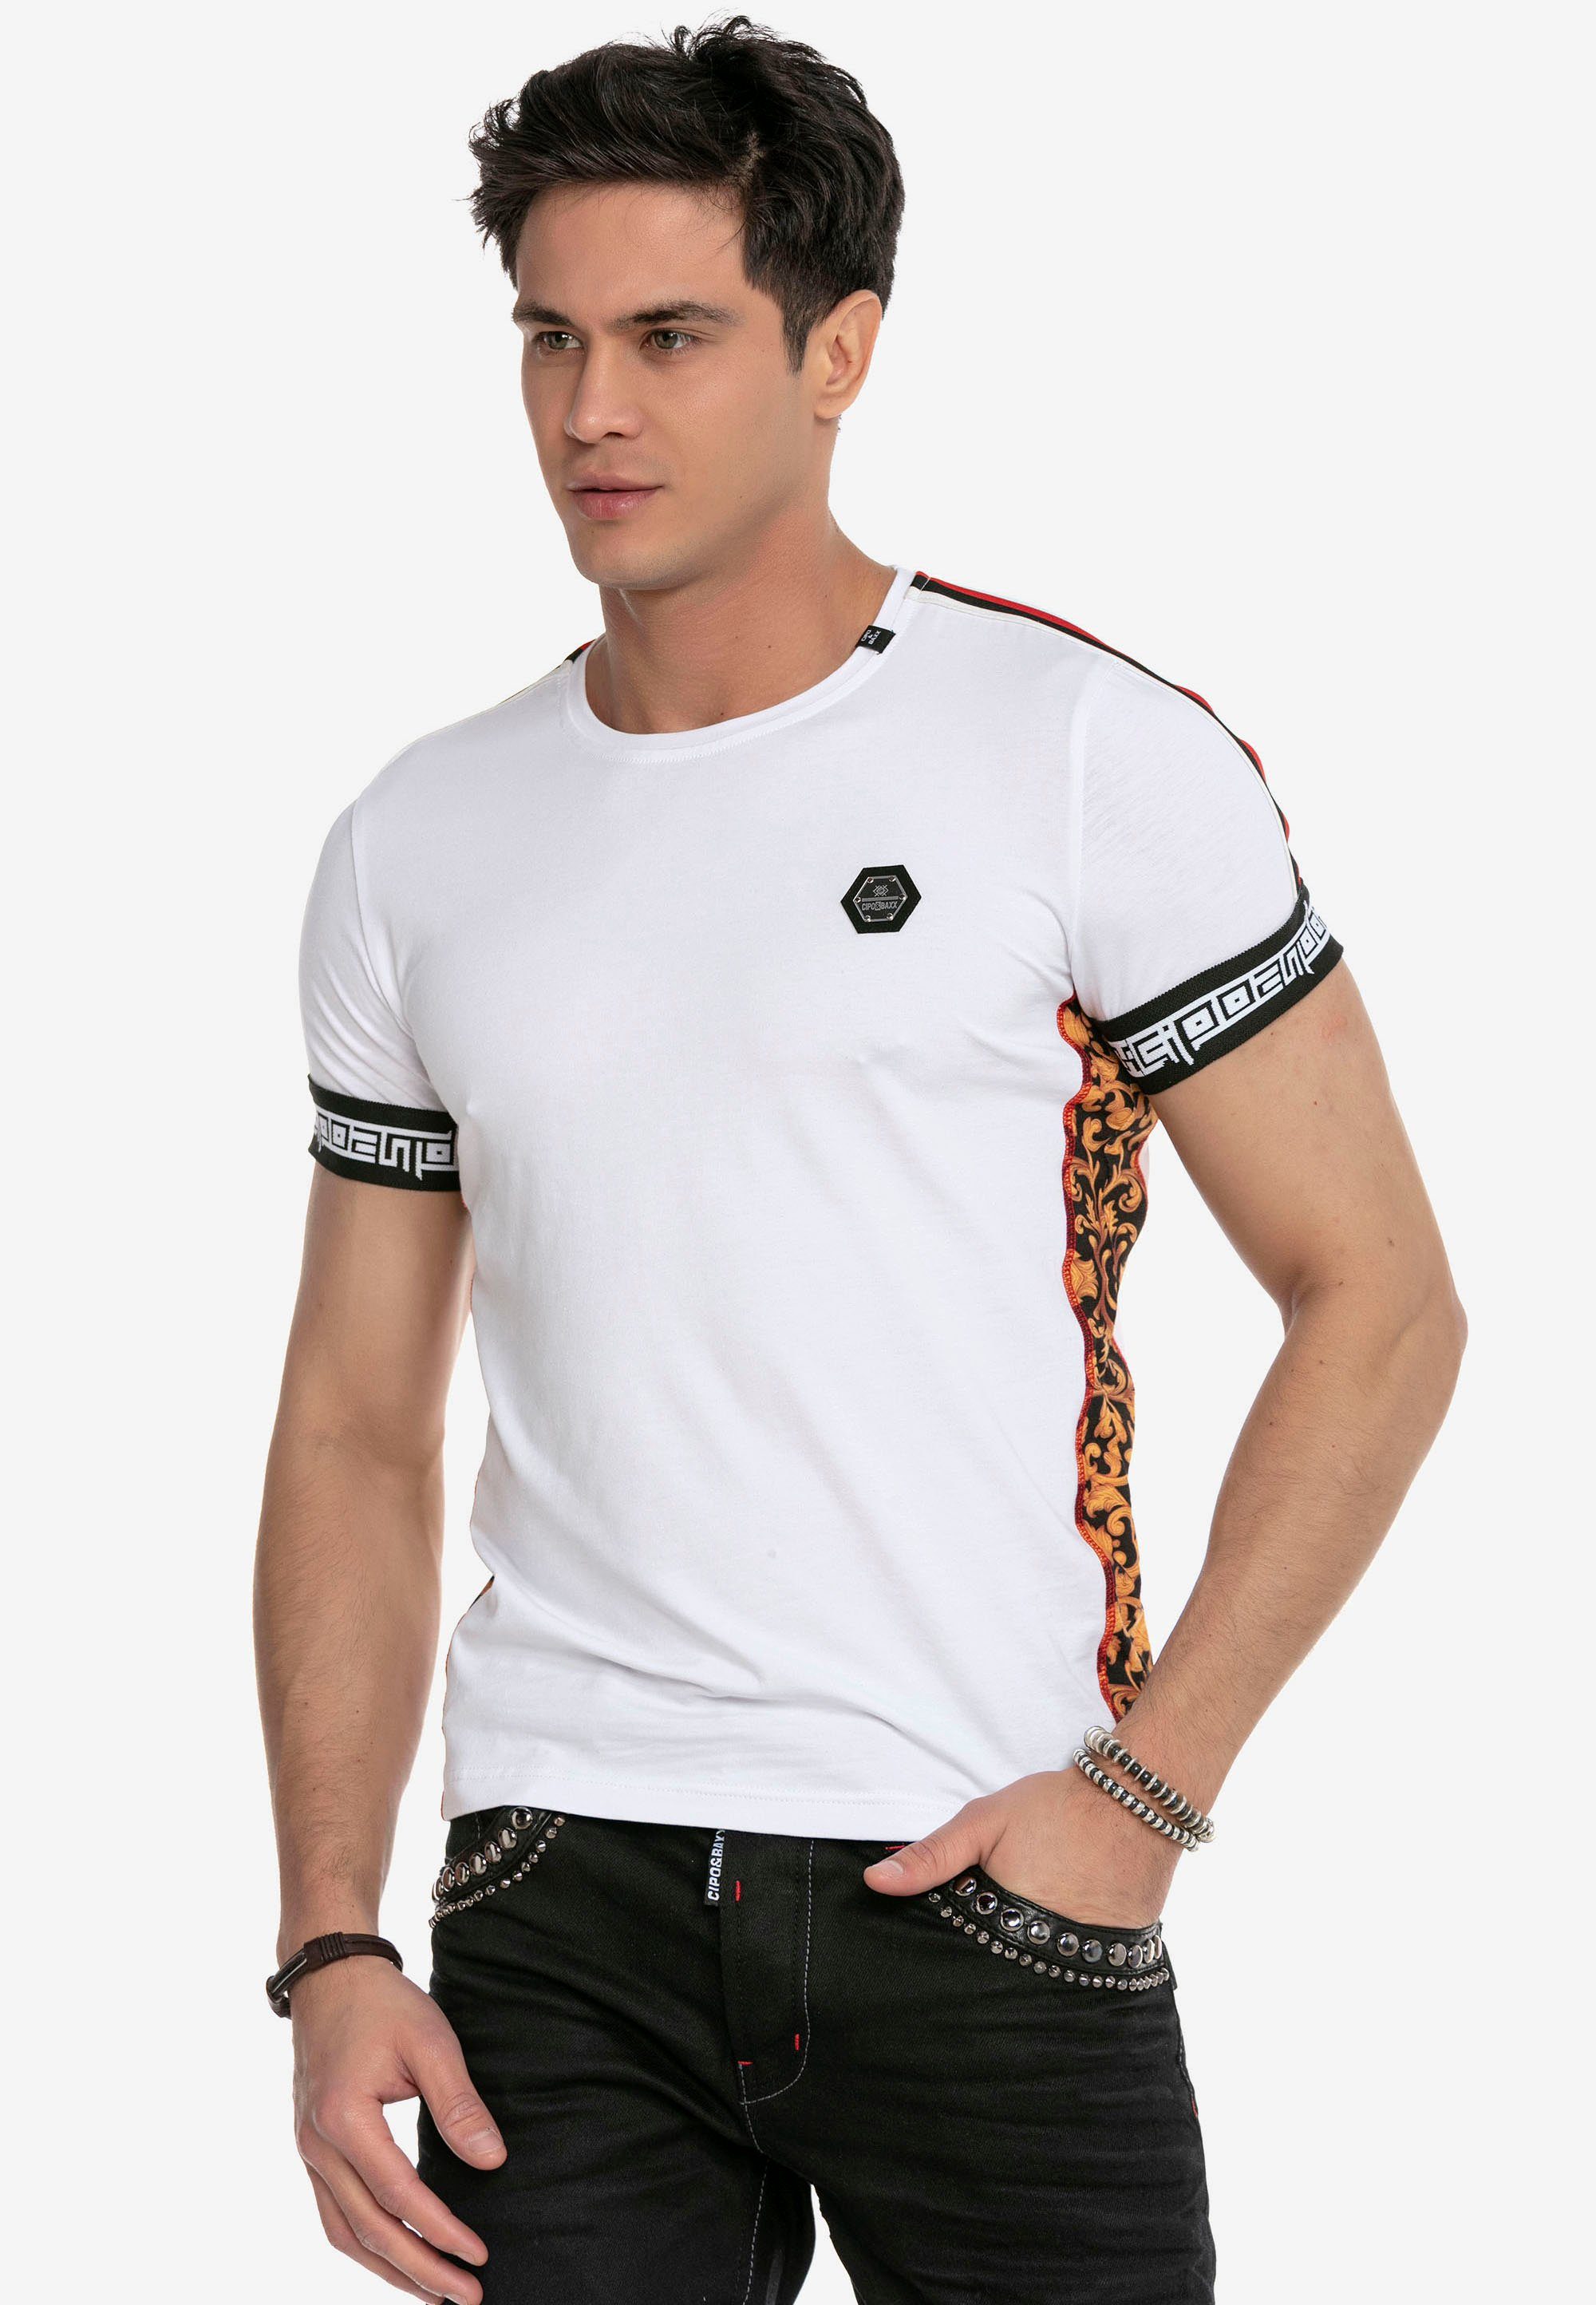 Cipo & Baxx T-Shirt im weiß sportlichen Design